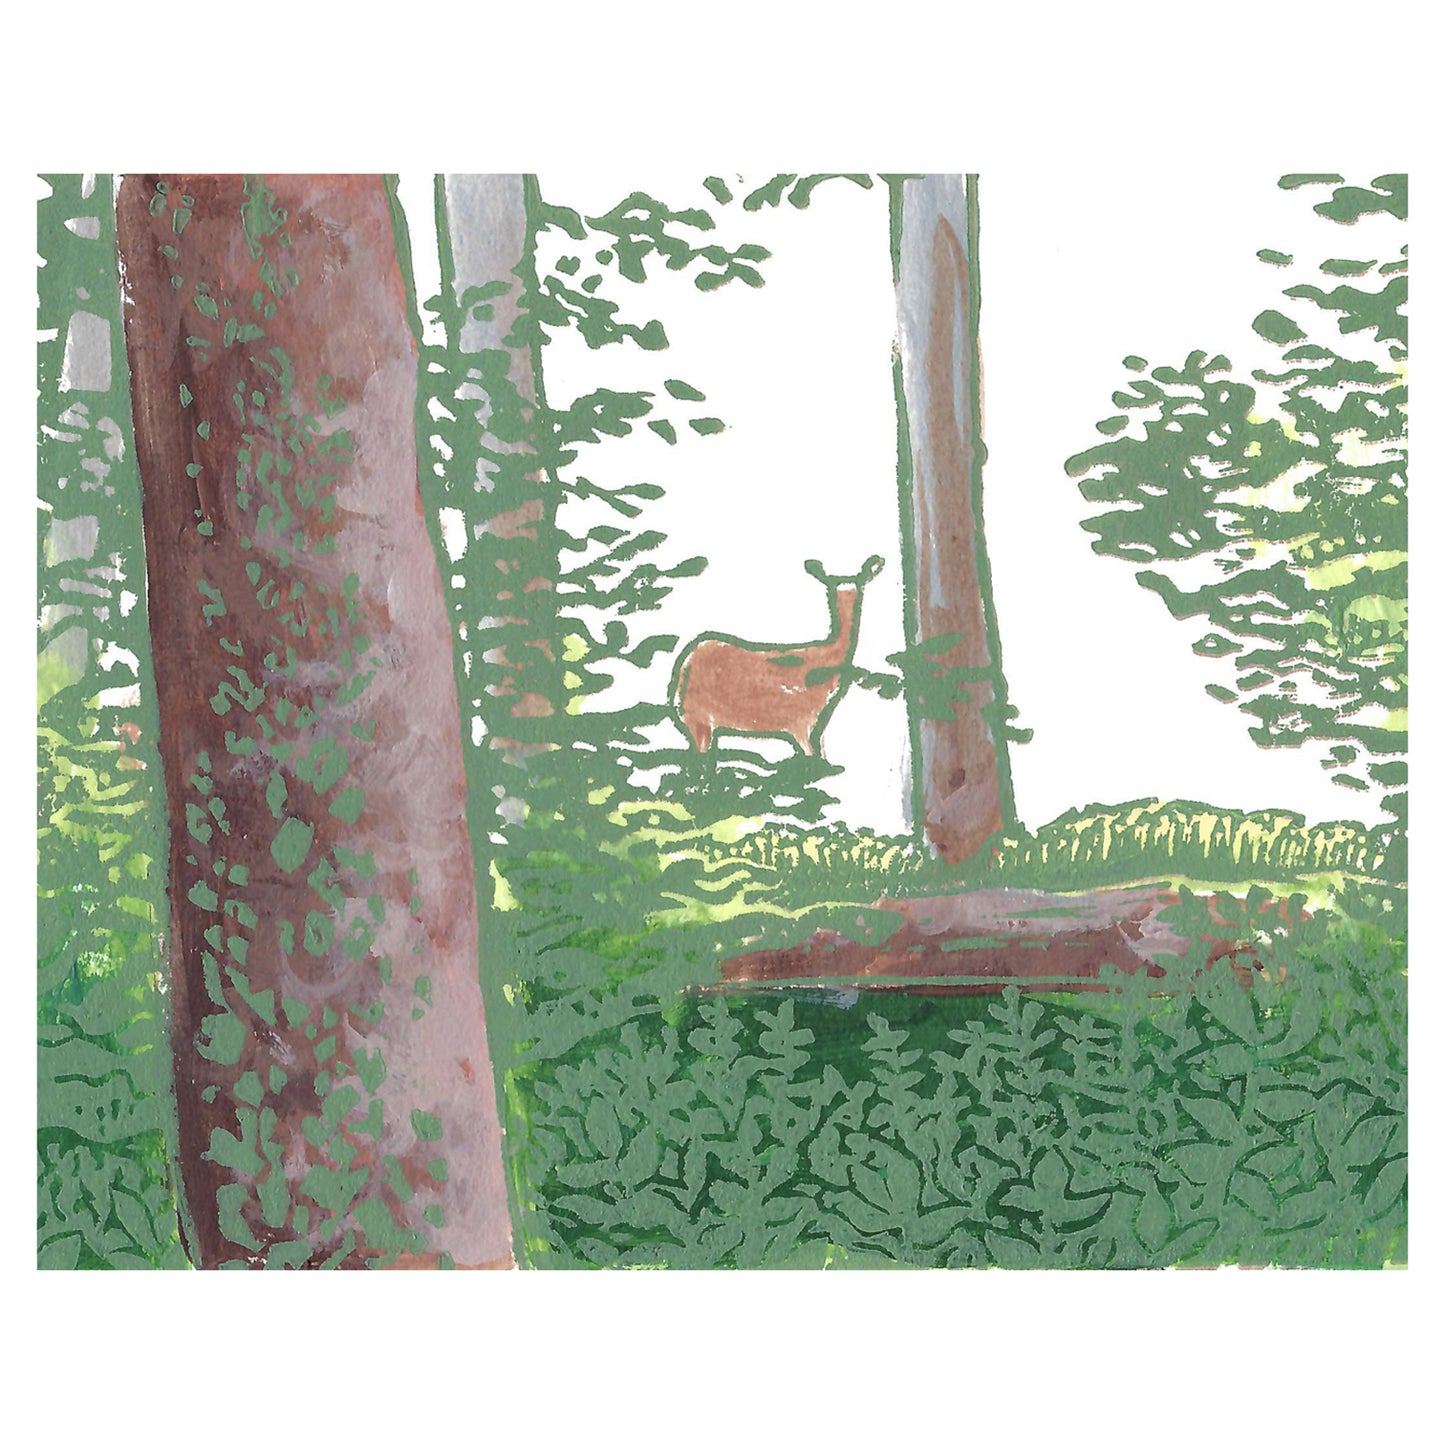 Beautiful deer art by printmaker Natalia Wohletz of Peninsula Prints titled Deer in the Woods.